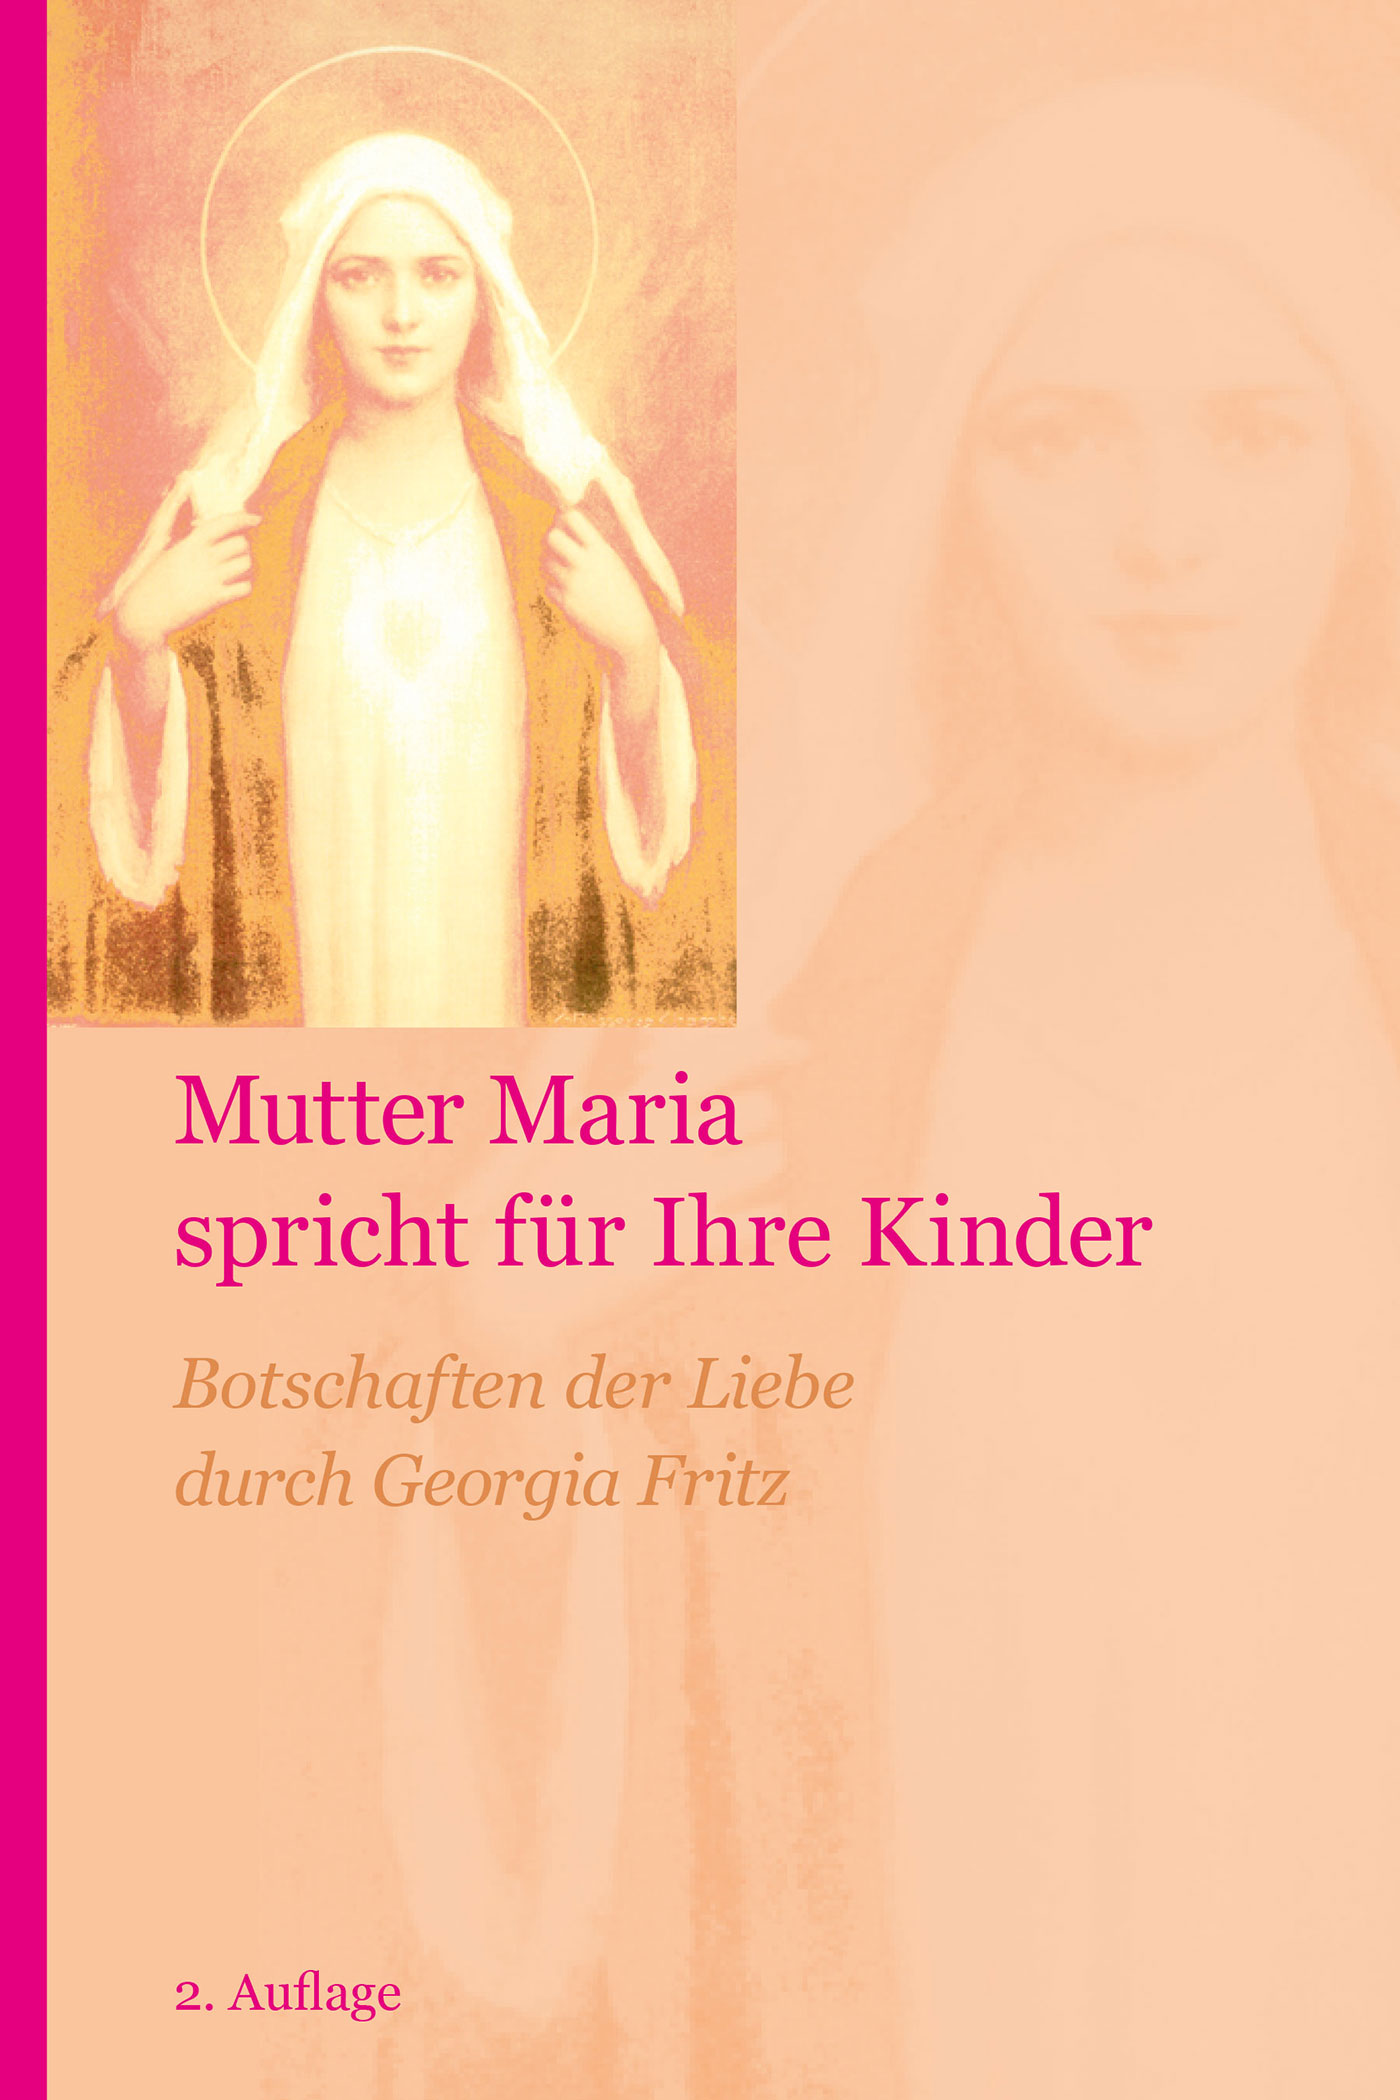 E-Book: Mutter Maria spricht für Ihre Kinder